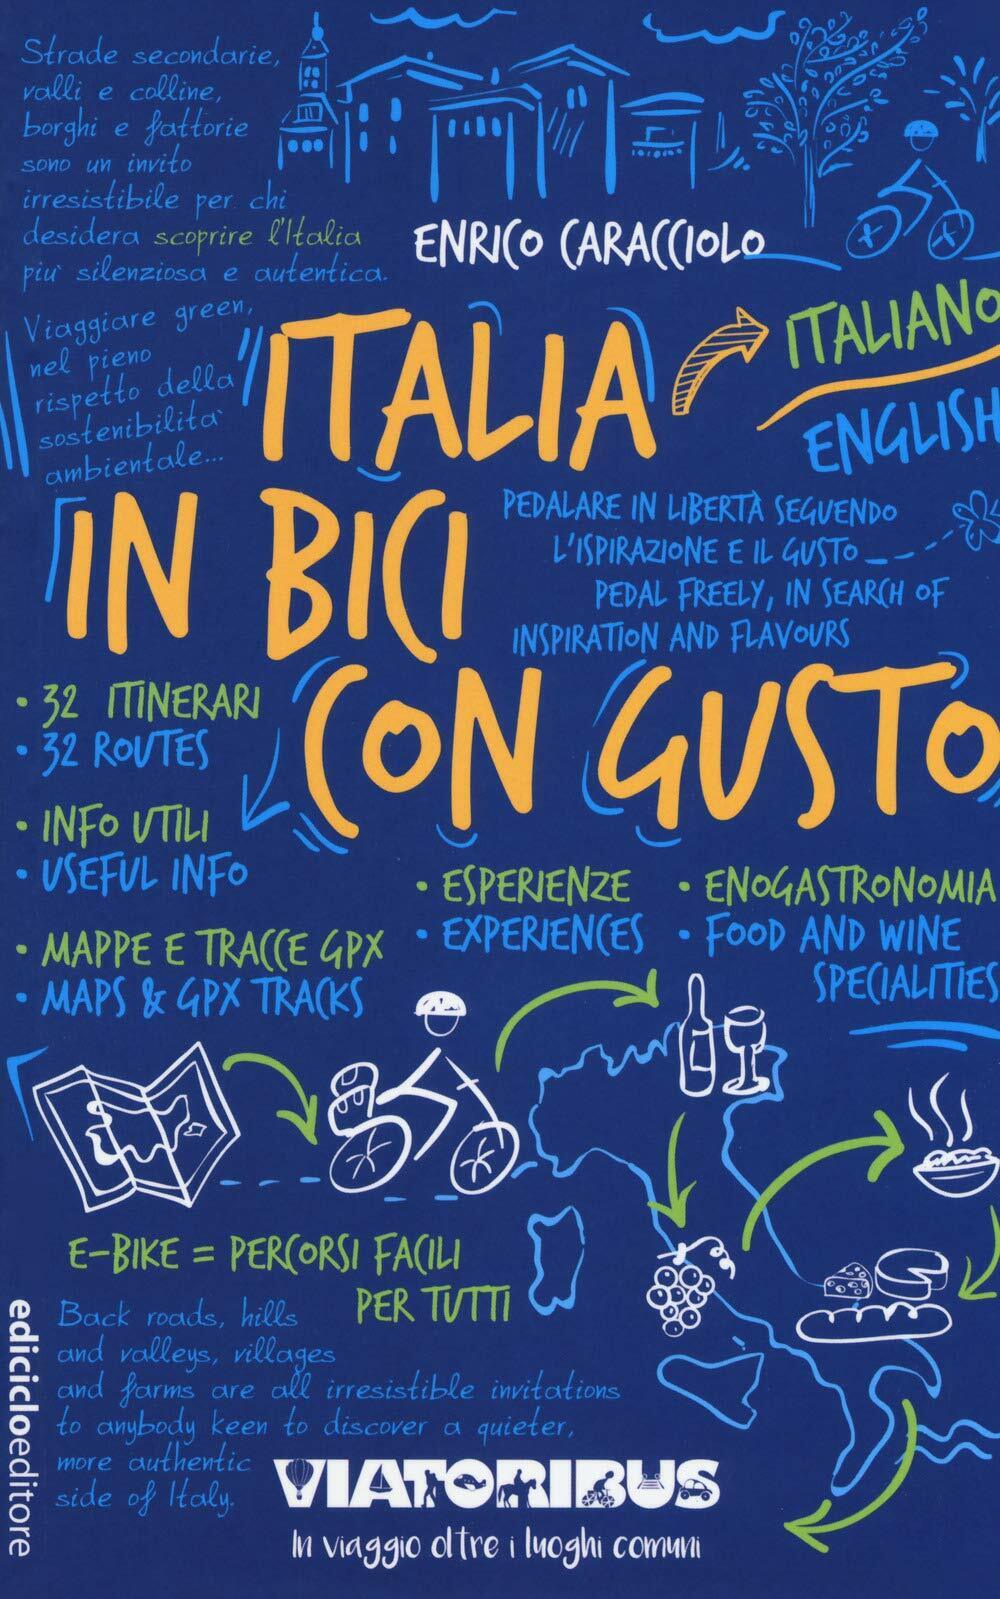 Italia in bici con gusto - Enrico Caracciolo - Ediciclo, 2019